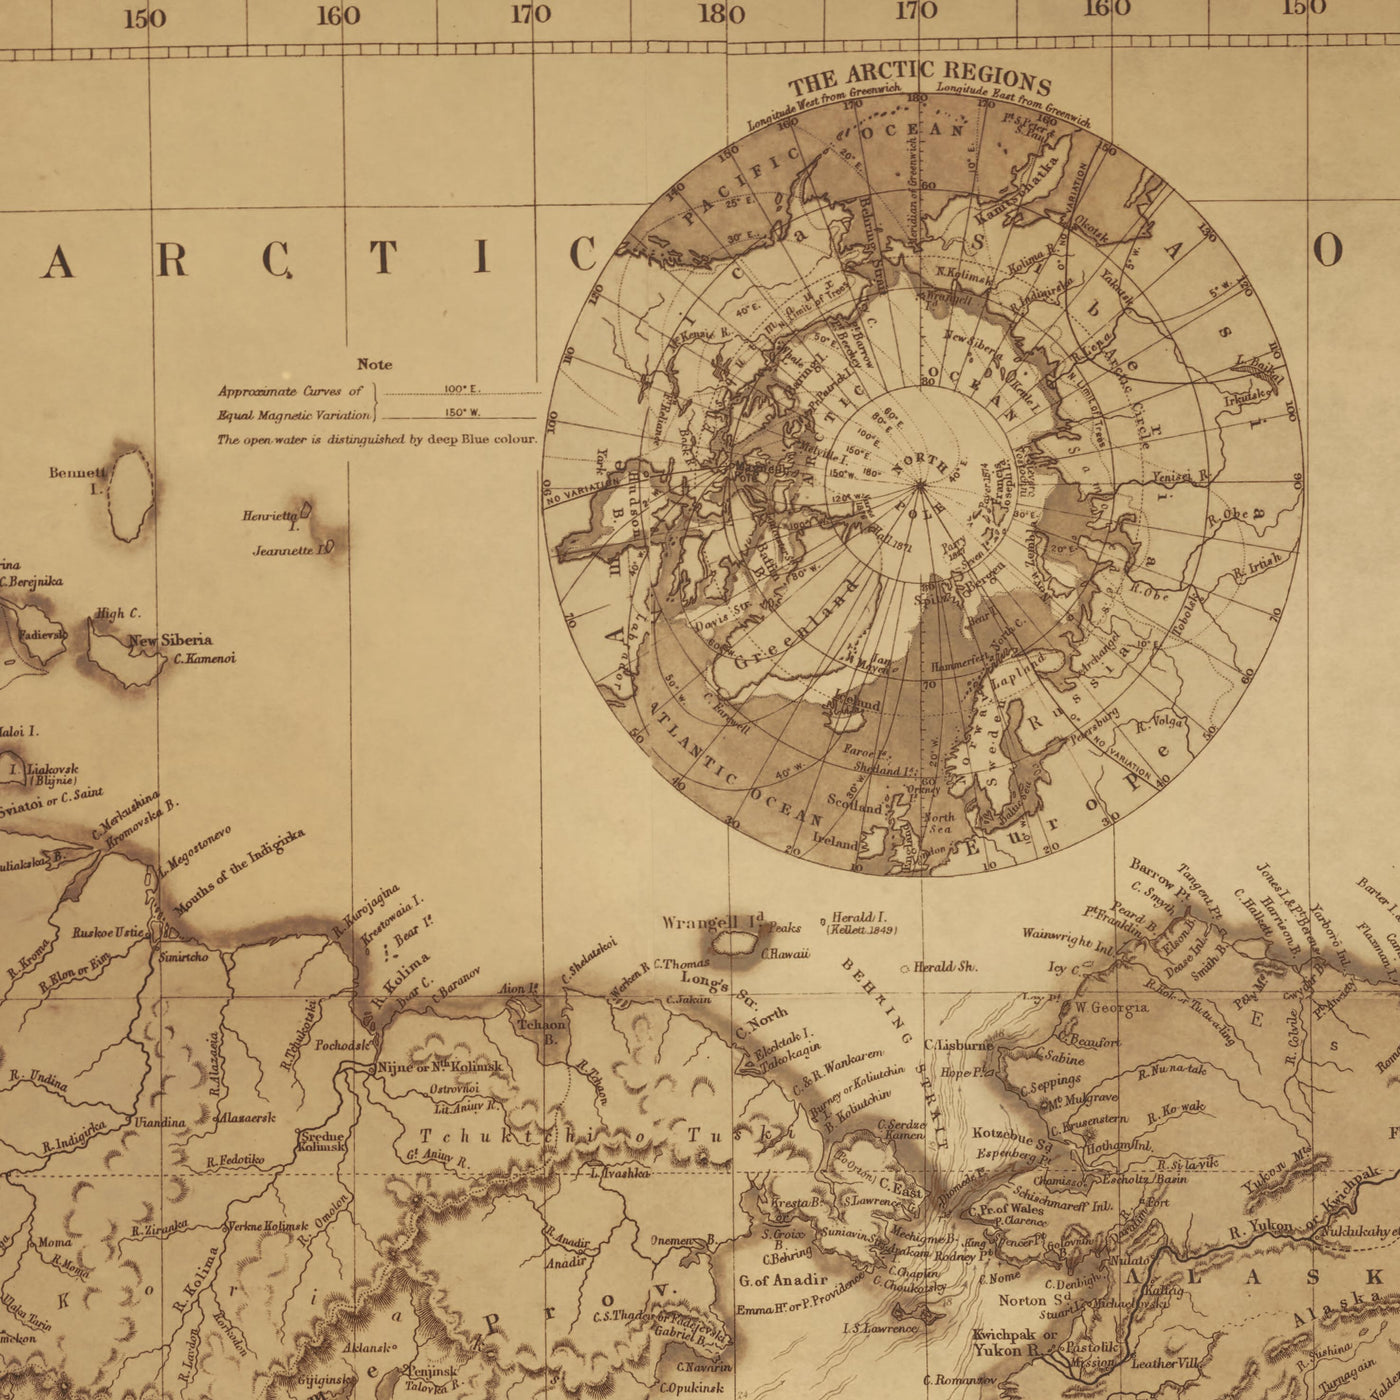 Alte Weltkarte von Edward Stanford, 1898 - Meisterwerk Sepia Atlas Wanddiagramm